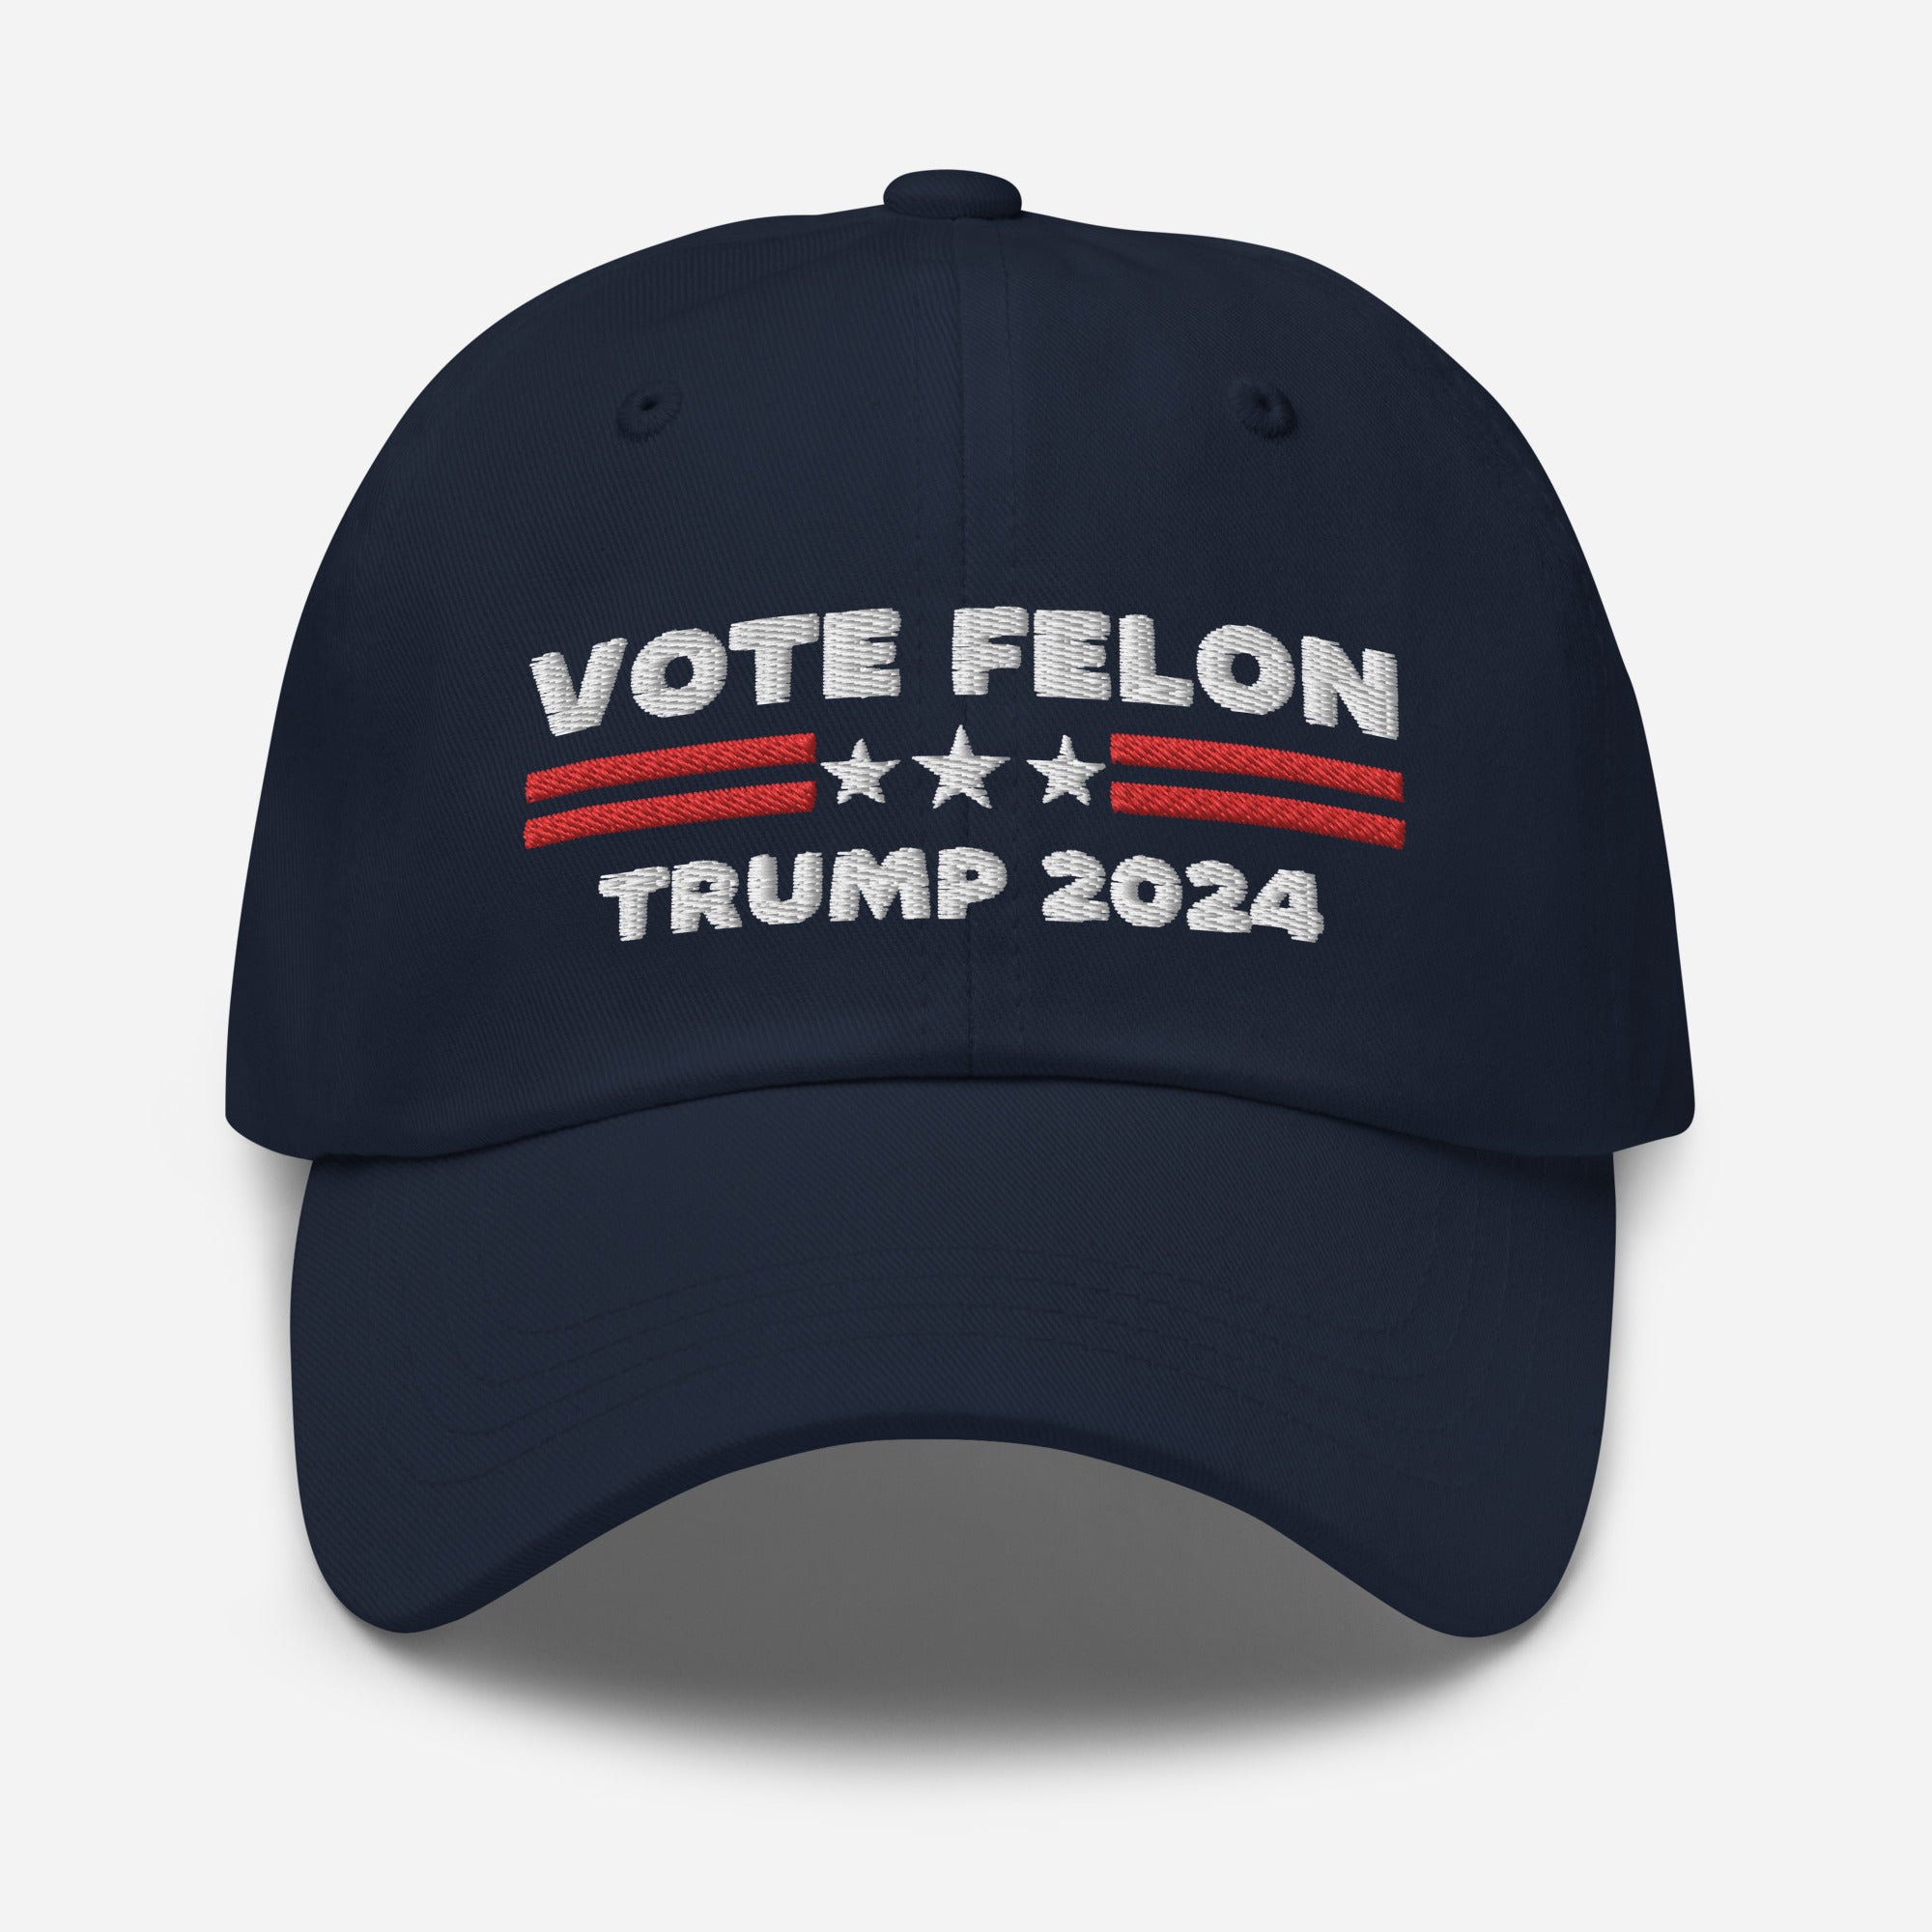 Vote Felon 2024 Papamütze, verurteilter Präsident, Trump 2024 Mütze, Republikaner Geschenke, Wahlmütze, Republikaner Mützen, Politische Mütze, Lustige Papamütze